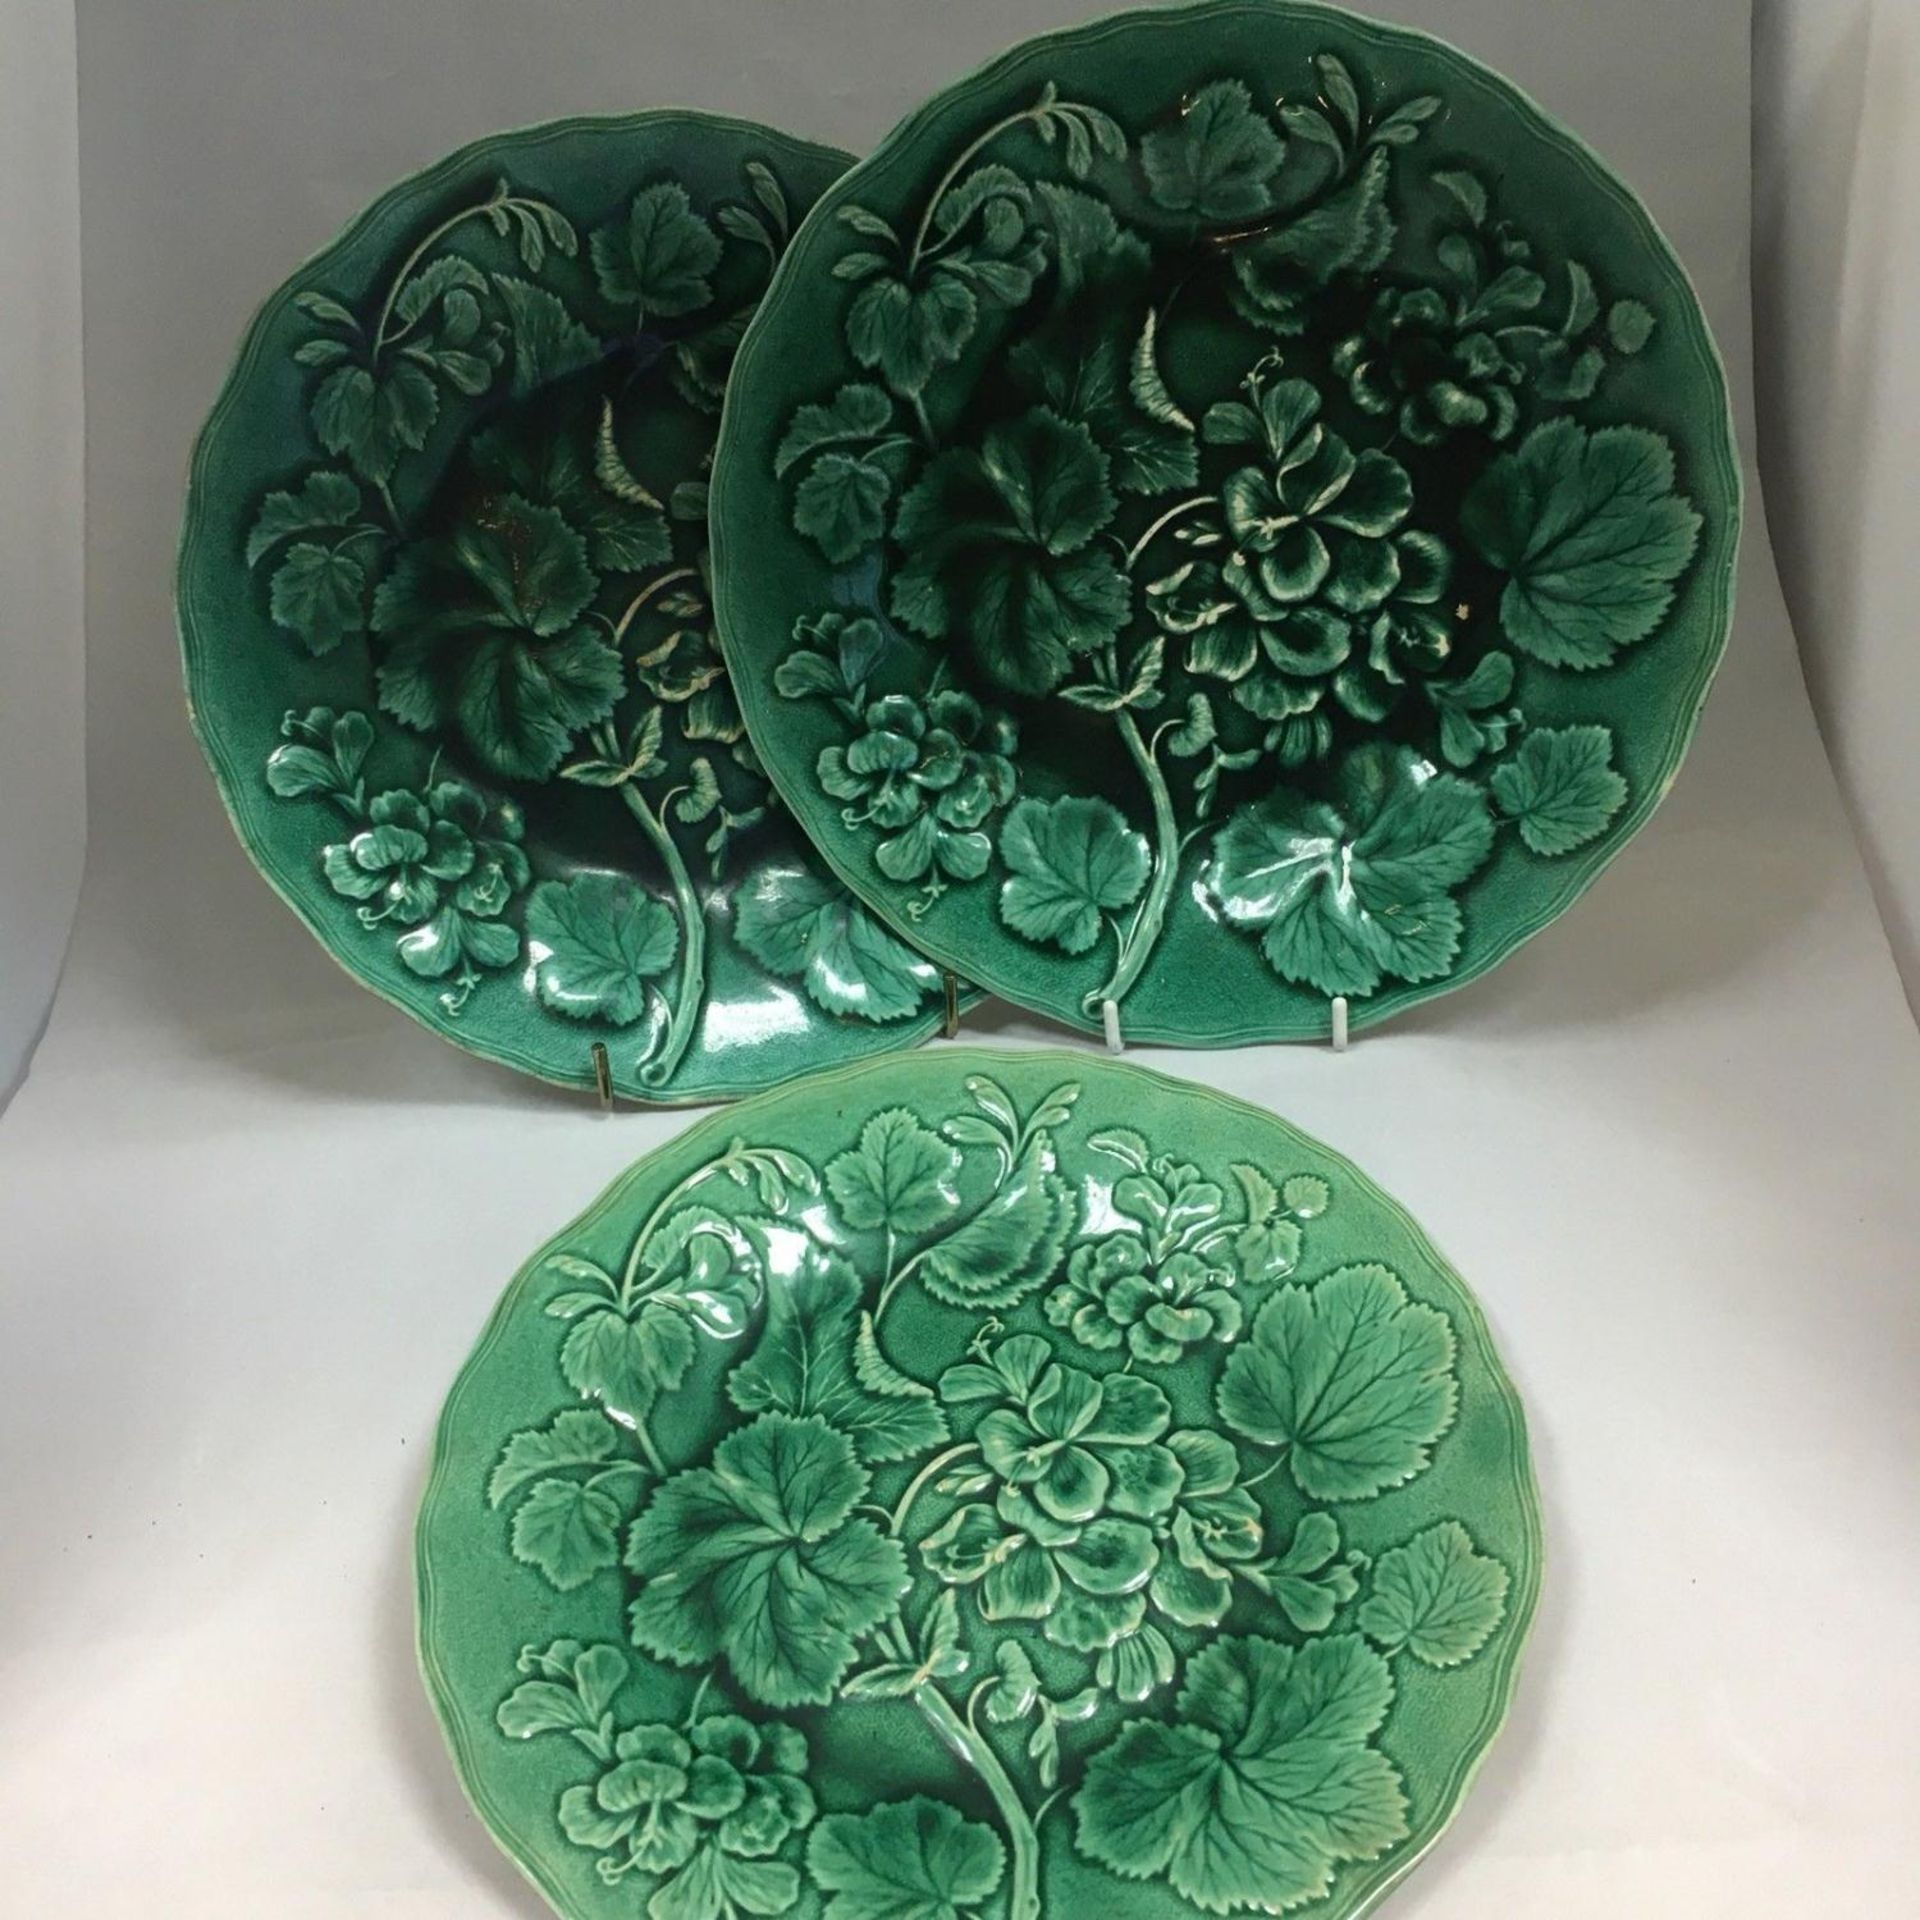 3 Rare Antique 19th Century Majolica Green Geranium Dessert Plates by Hope & Carter